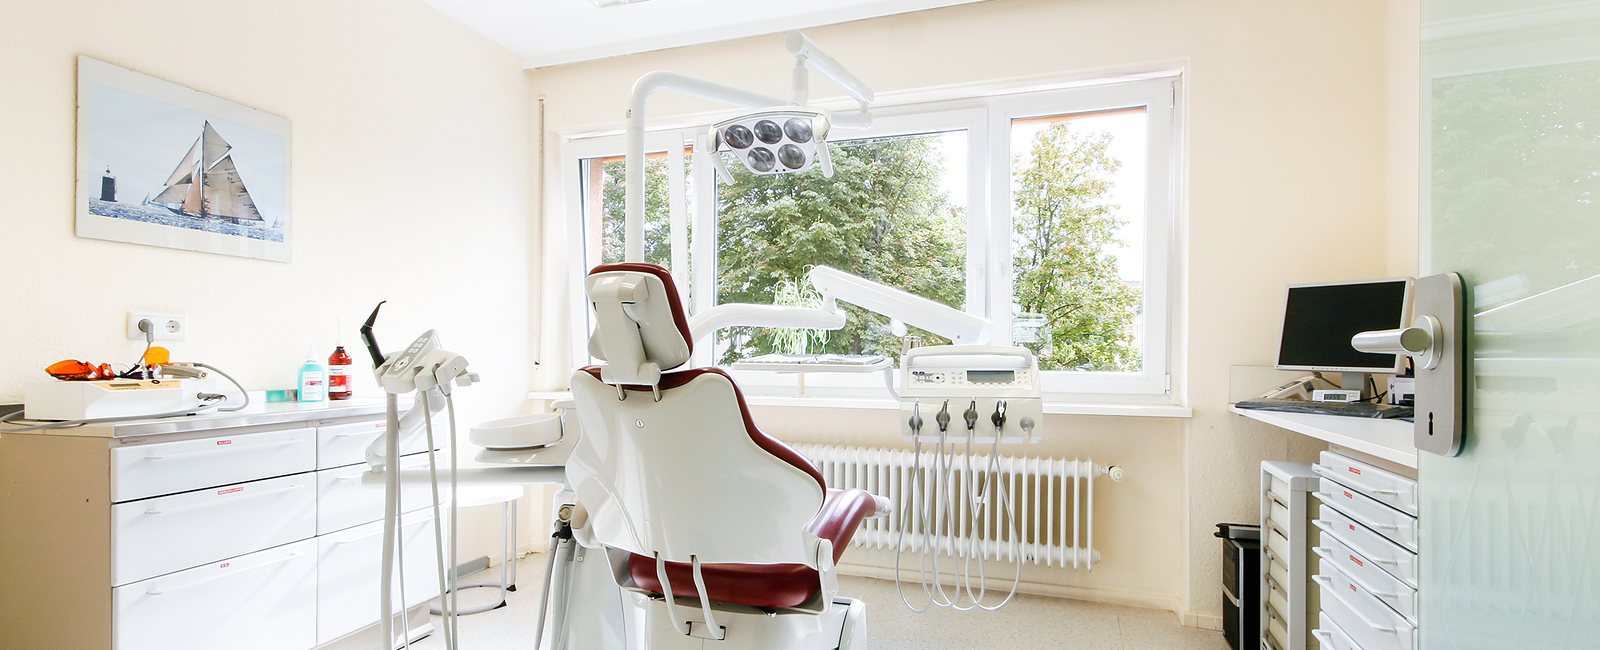 Behandlungszimmer mit Zahnarztstuhl und zahnärztlicher Ausstattung 